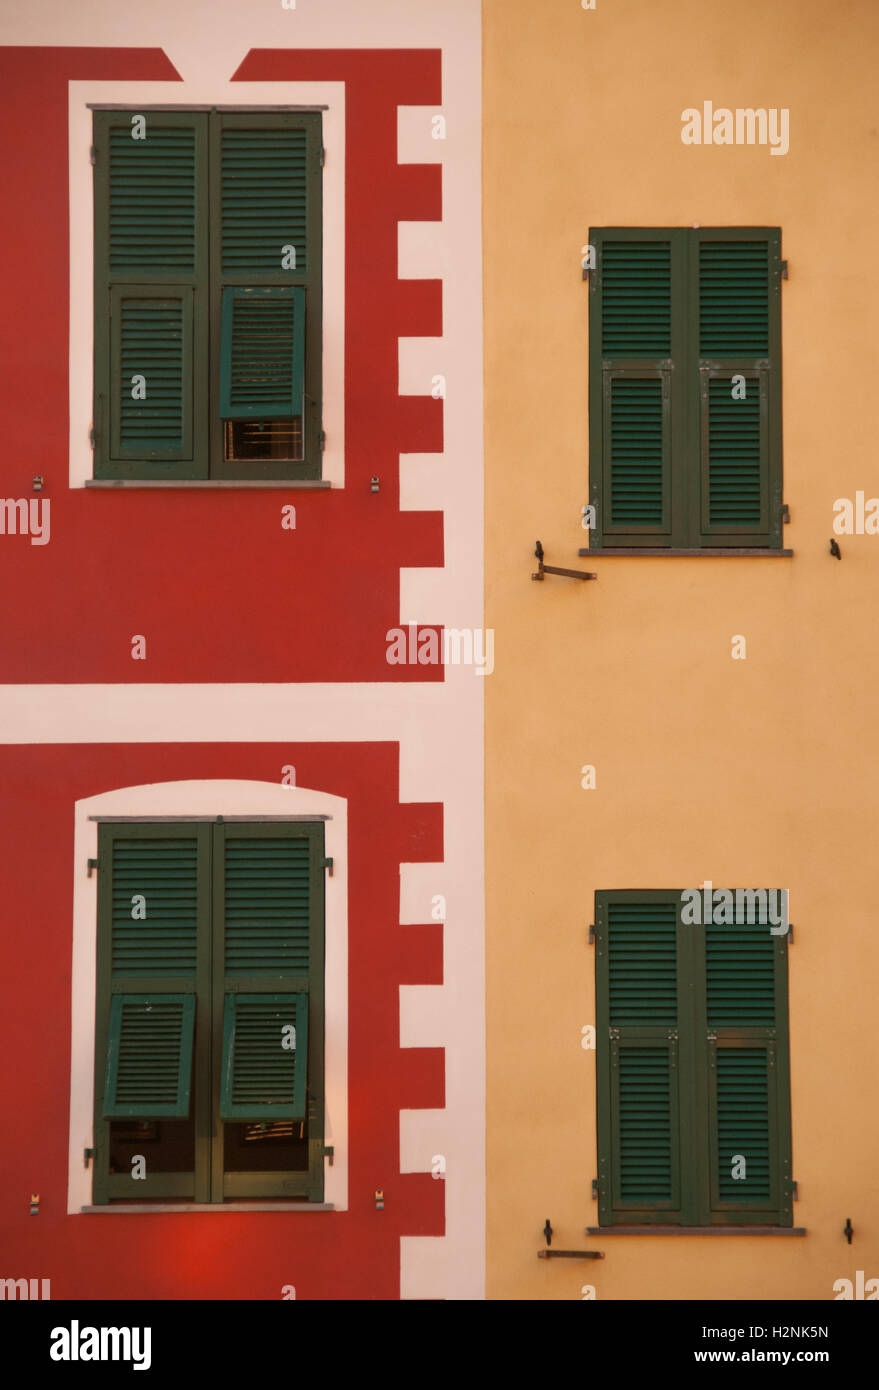 Traditionell gestaltete Fenster, in der Regel gefärbt, diese Buldings gefunden in der Region Cinque Terre Riomaggiore, Liguaria, Italien, Stockfoto